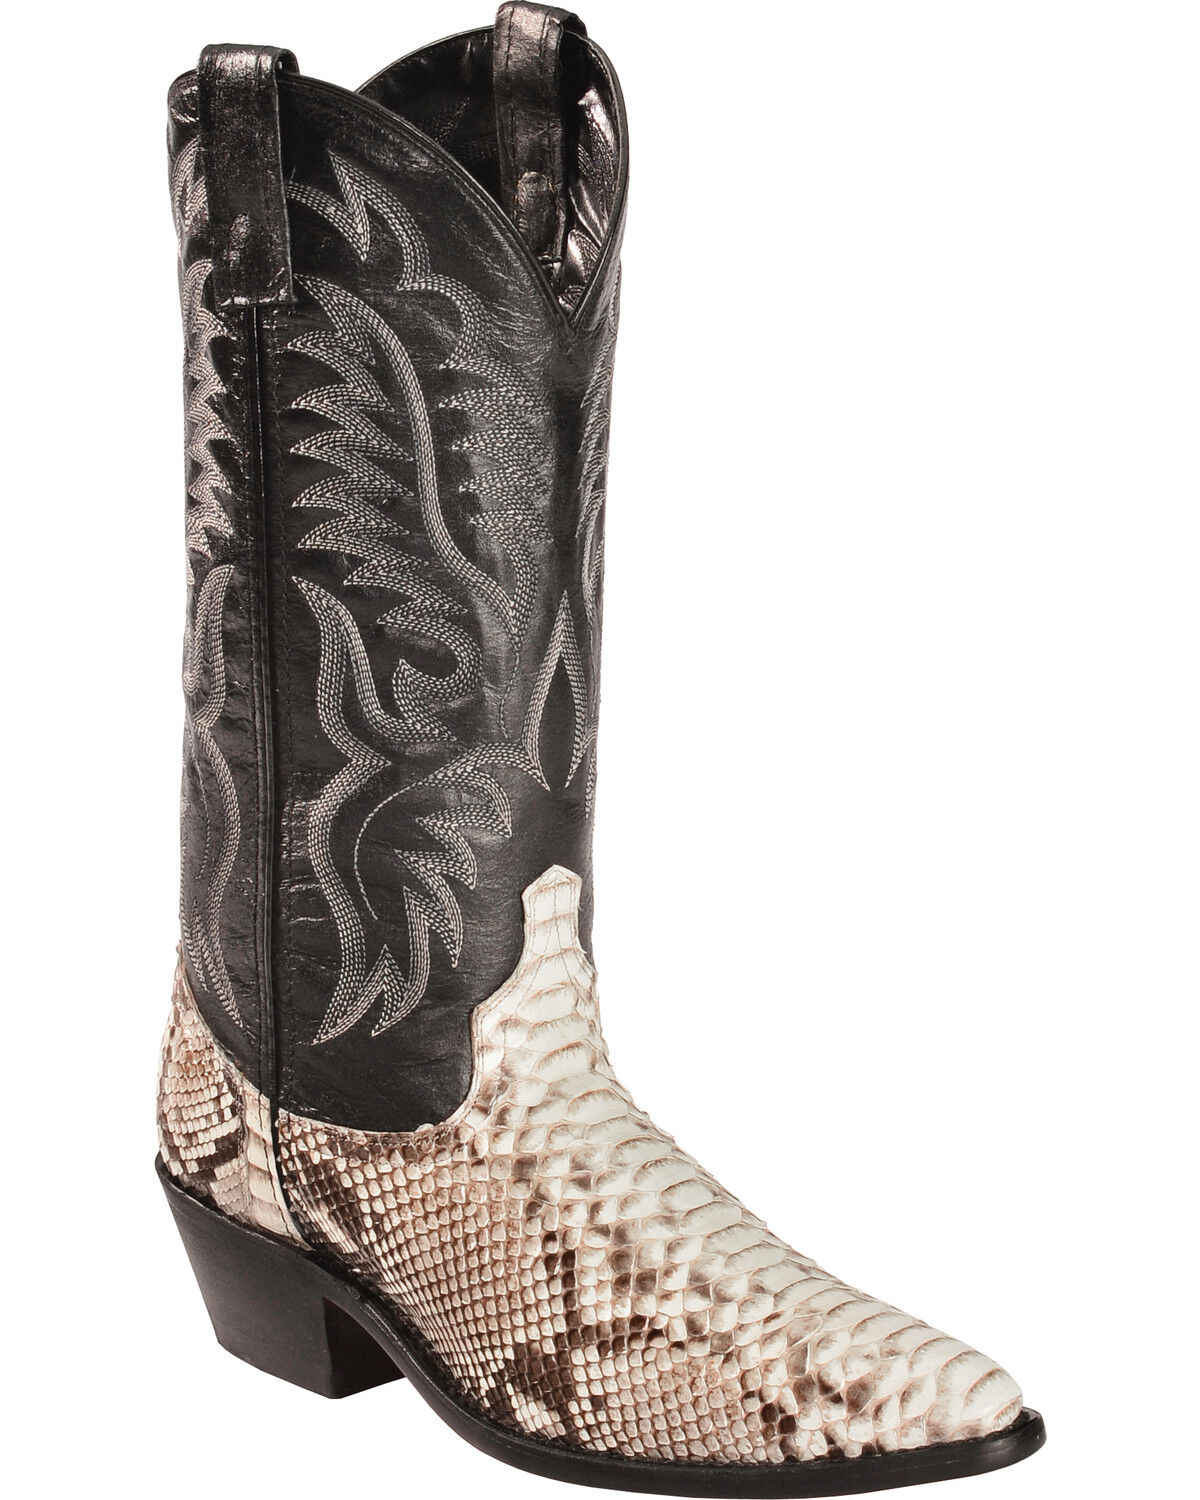 snake skin cowboy boot